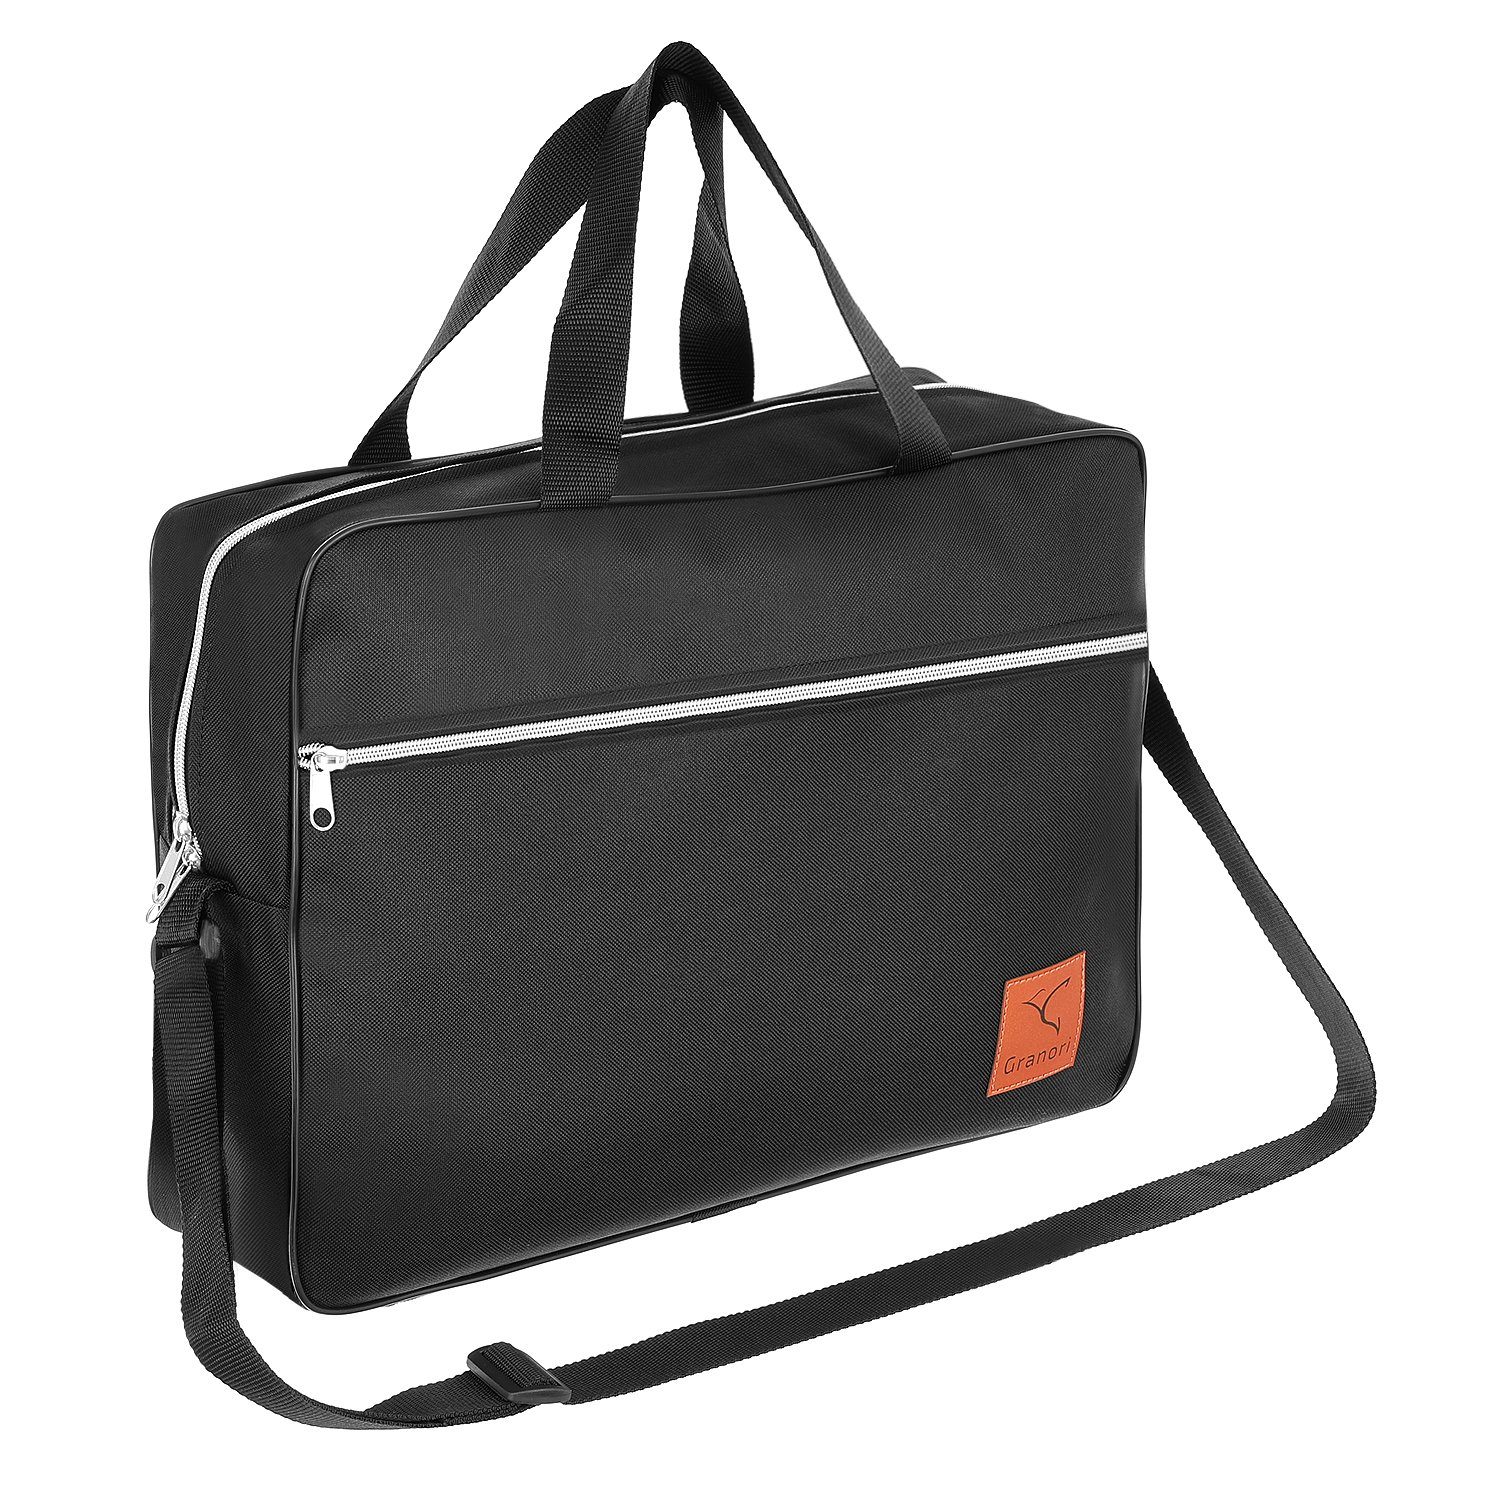 Granori Reisetasche 40x30x10 cm Handgepäck für Lufthansa Flug, extra leicht, mit verstellbarem Schultergurt Schwarz